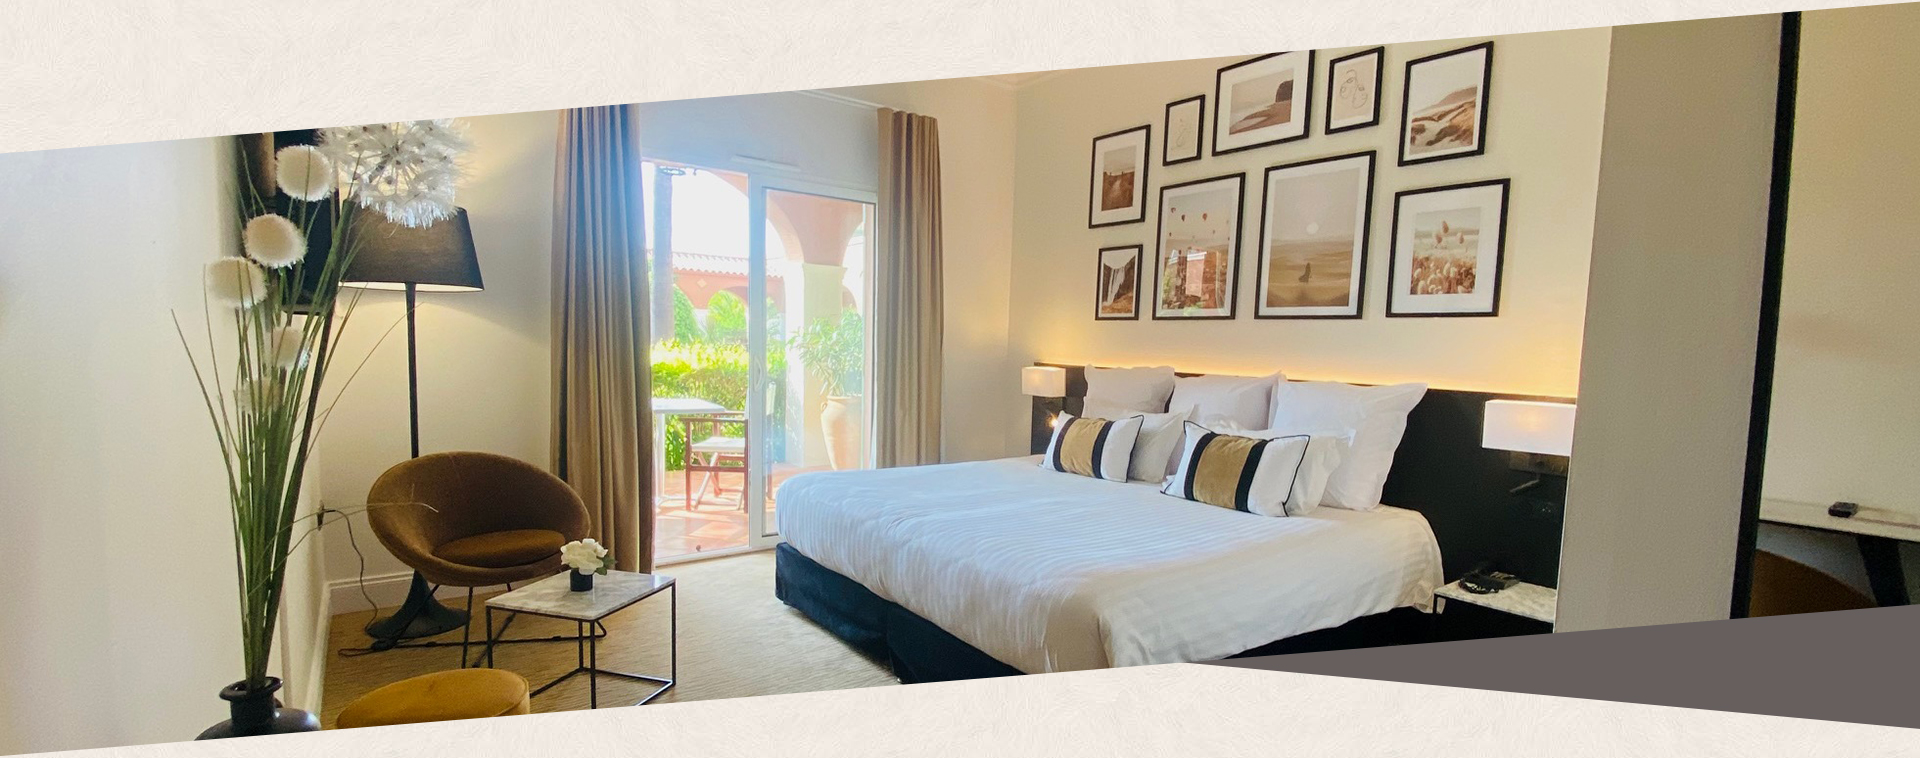 Vue d’une chambre avec vue sur le golf du Palmyra Golf hôtel 4 étoiles au Cap d’Agde